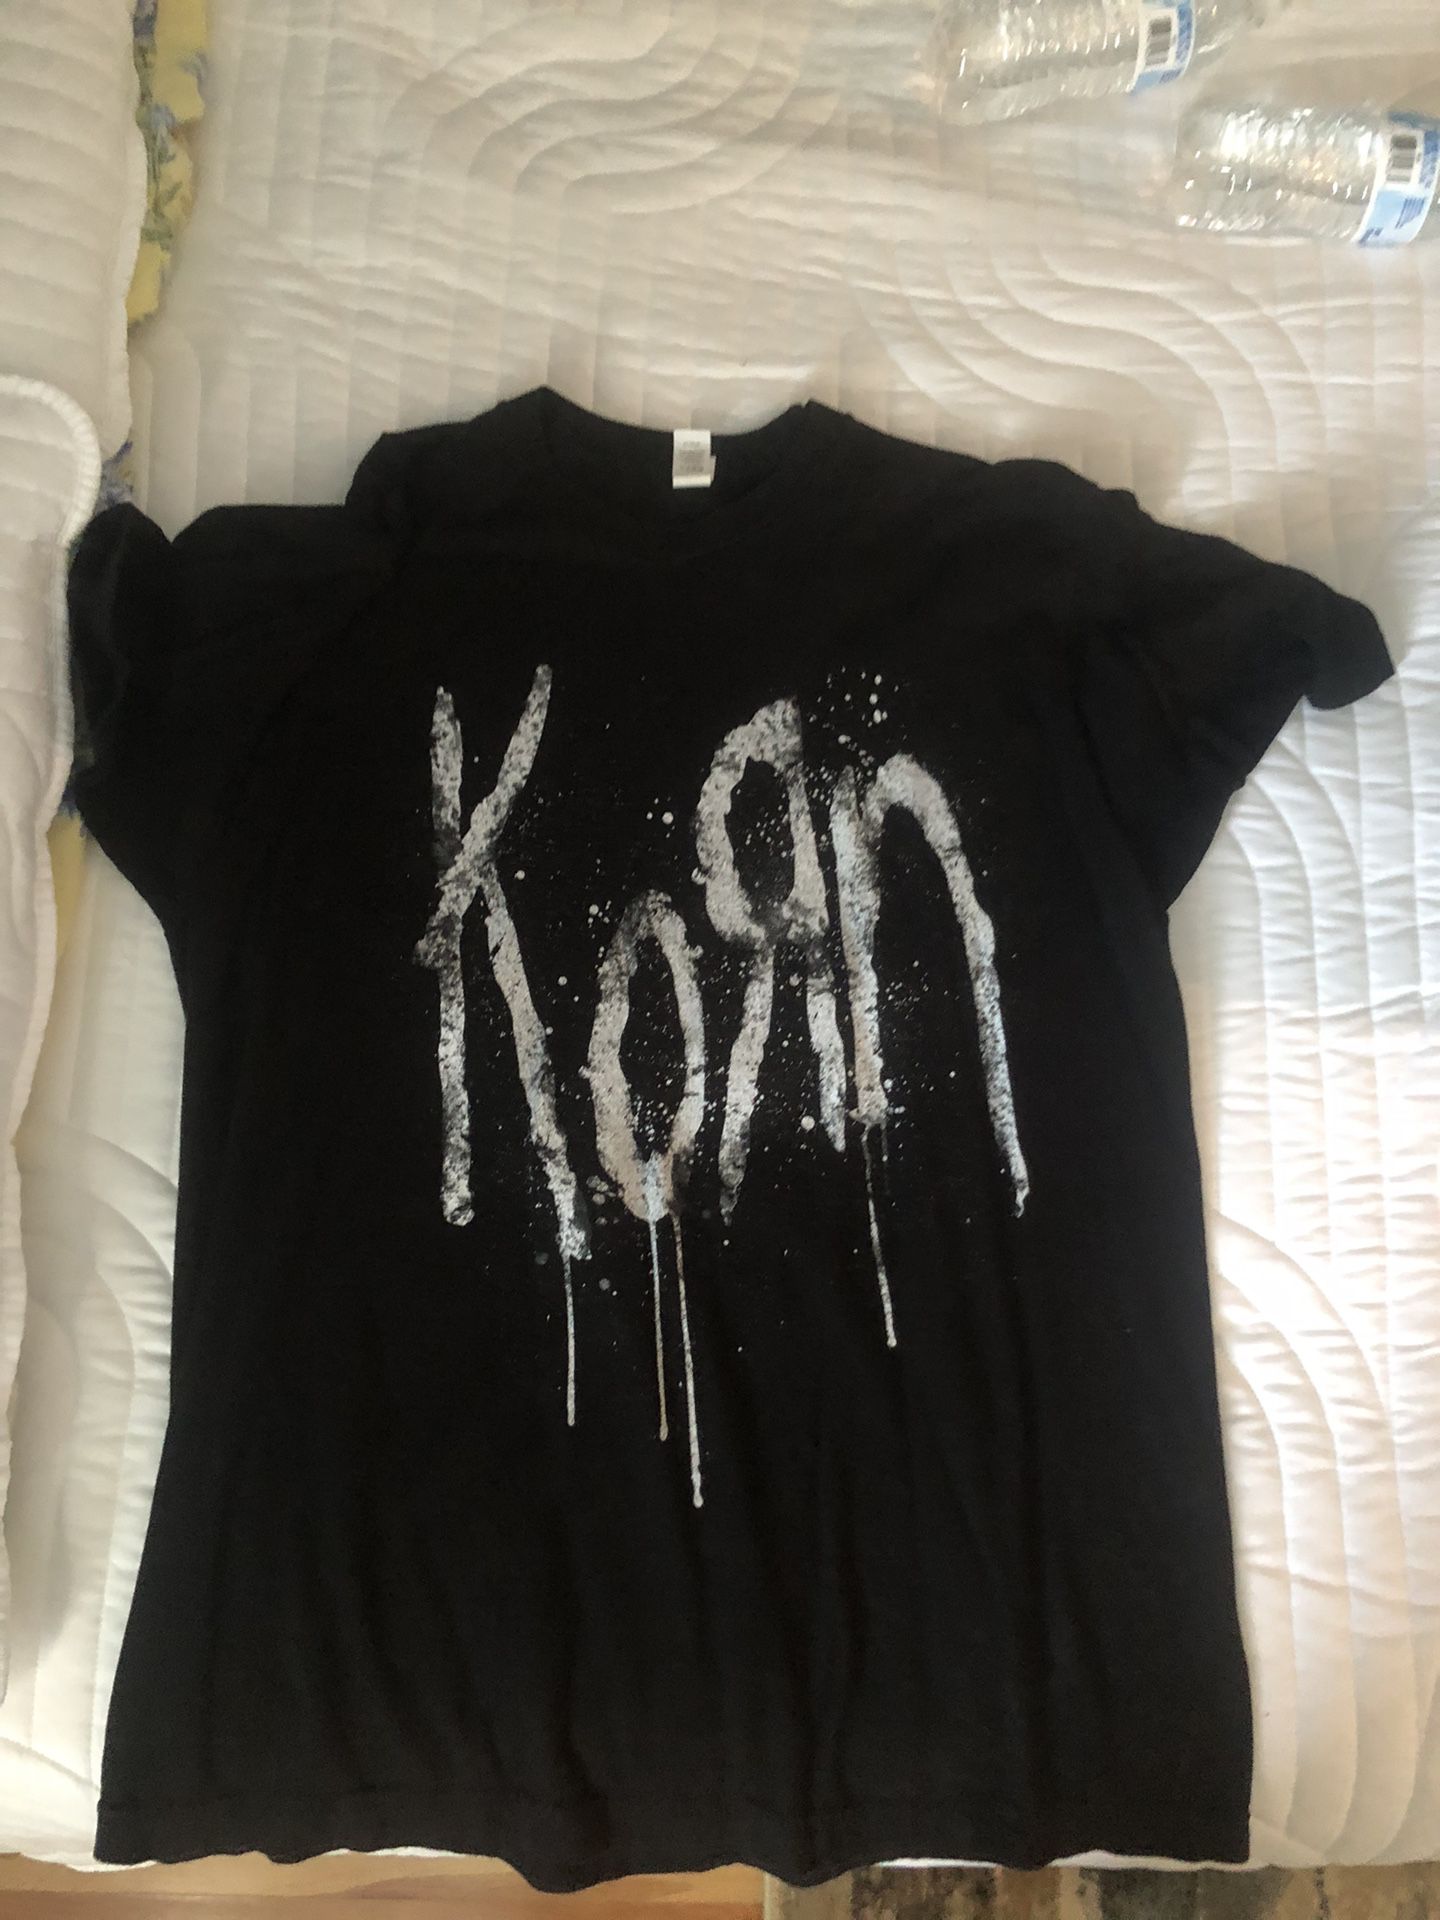 Korn Still A Freak T-shirt (large)